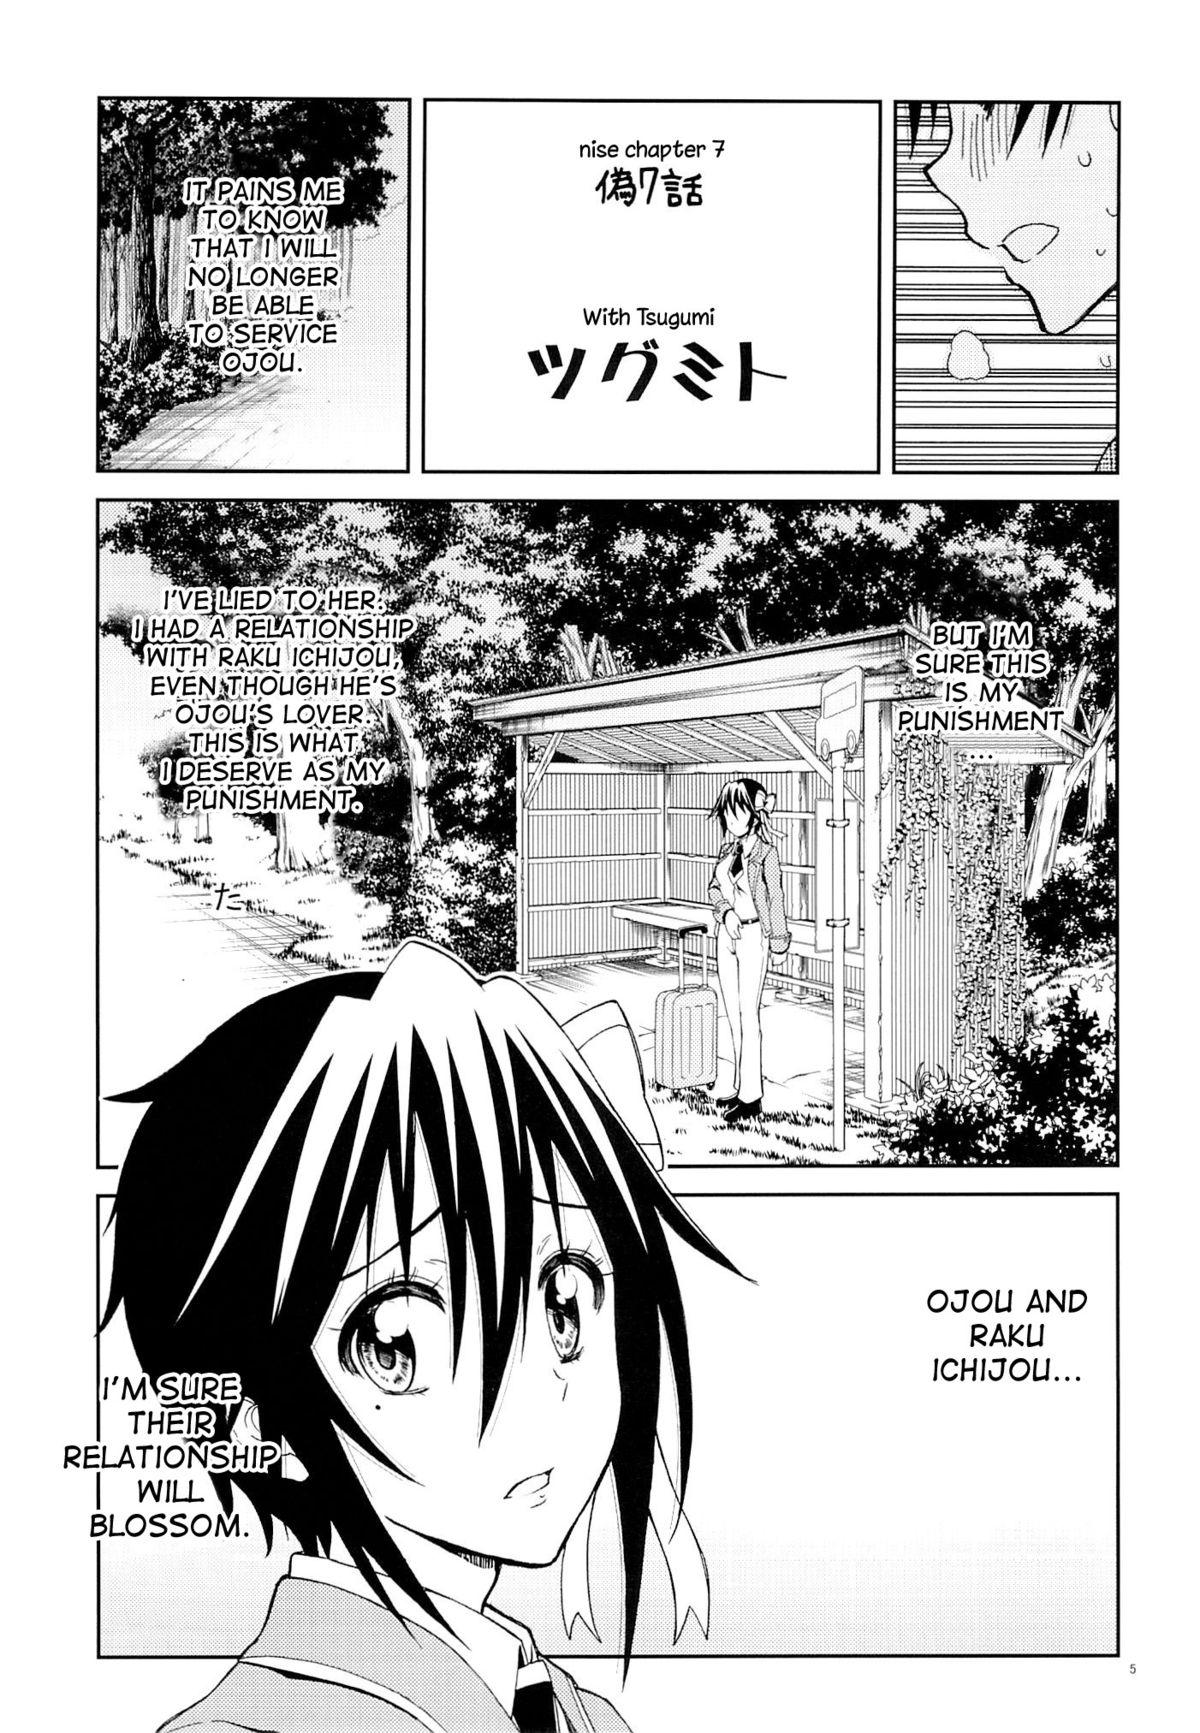 Home Nisenisekoi 7 - Nisekoi Outside - Page 4